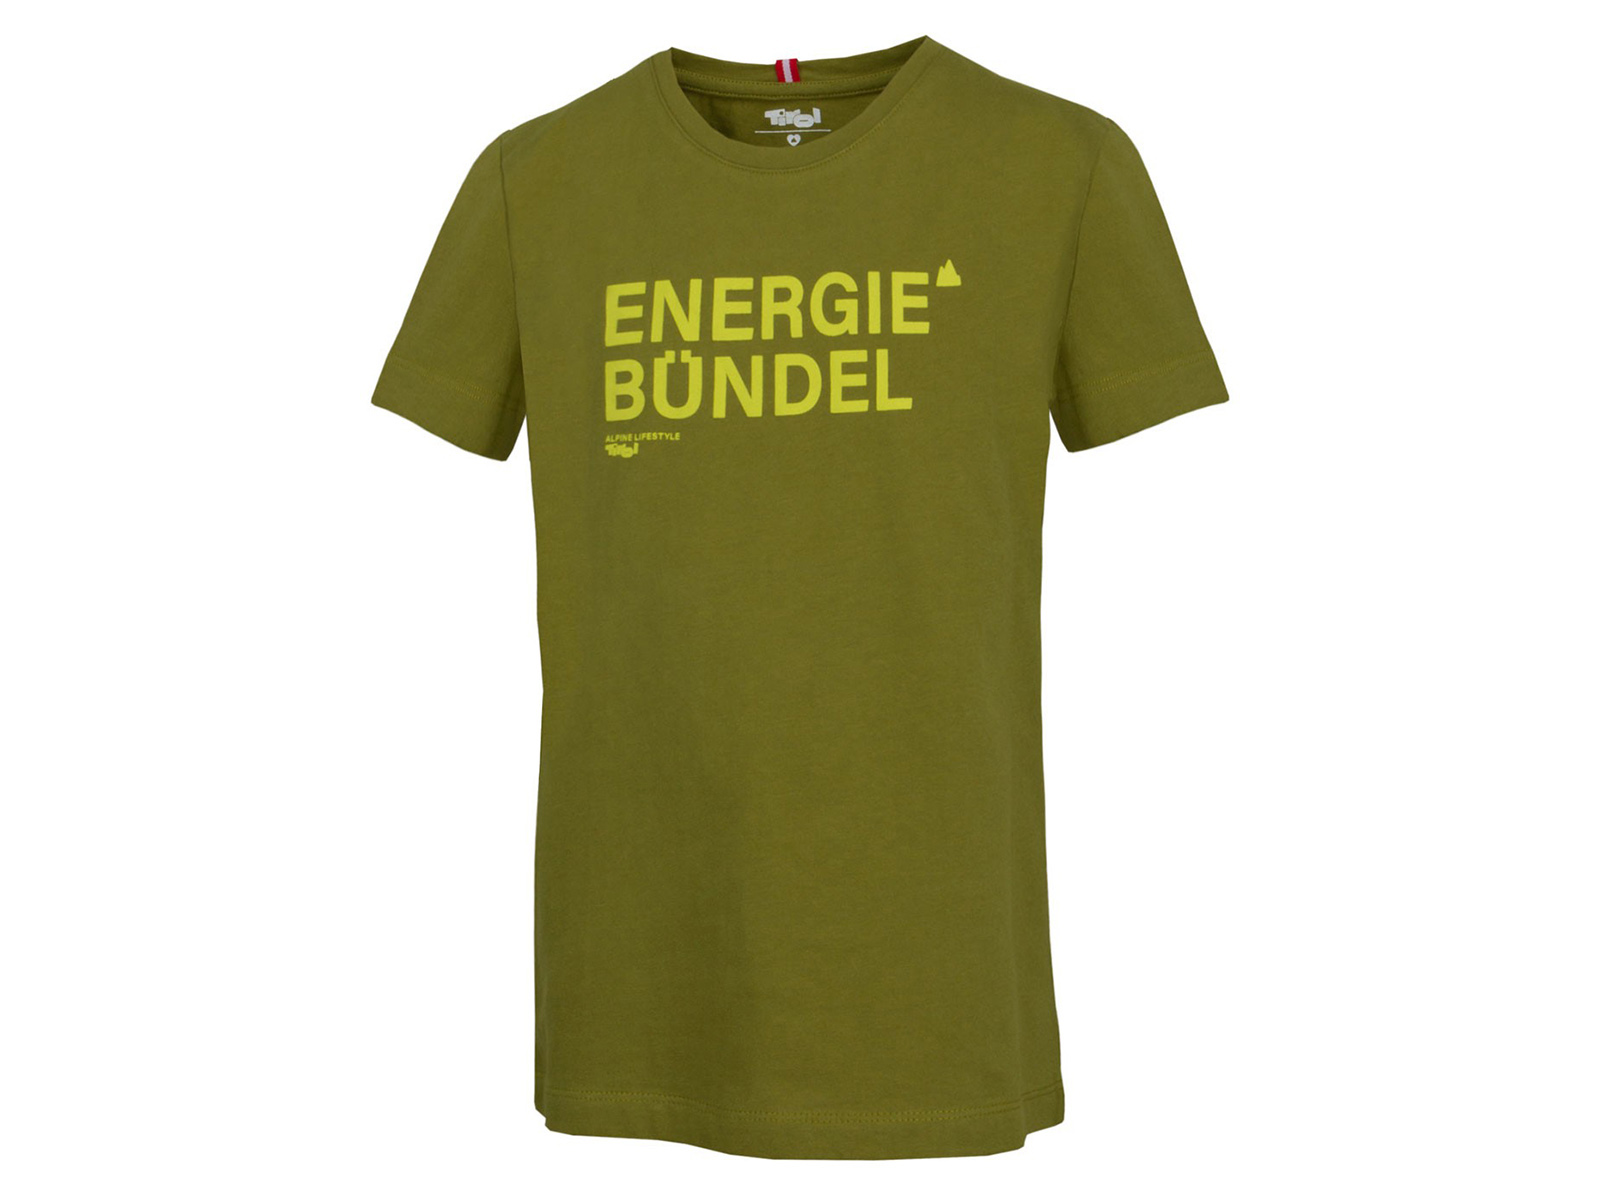 Kinder-T-Shirt-Energiebündel